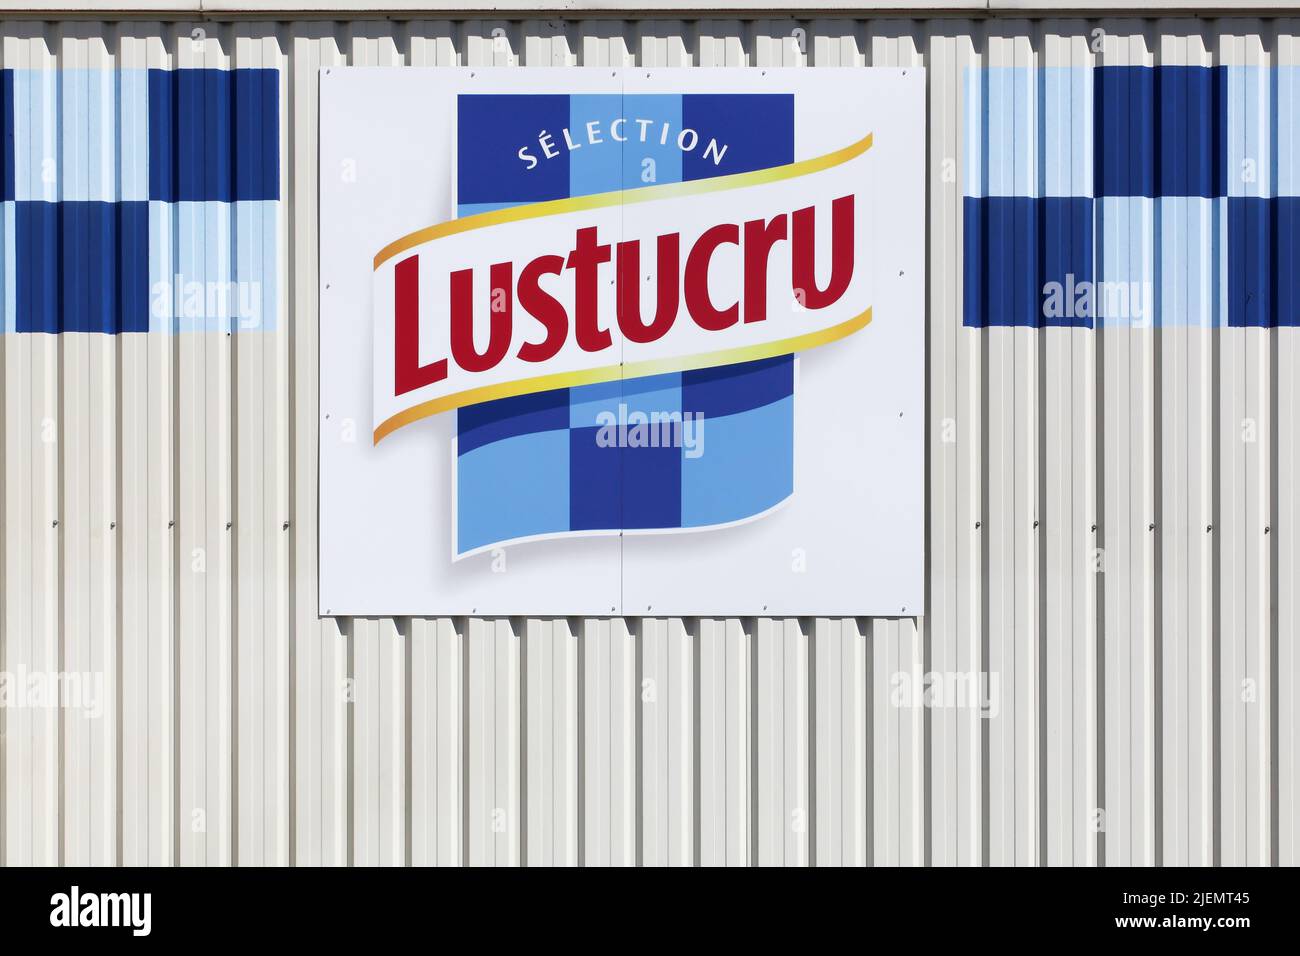 Saint Genis Laval, Francia - 21 de mayo de 2020: Logotipo de Lustucru en un edificio. Lustucru es una Marca francesa especializada en pasta y creada en 1911 Foto de stock